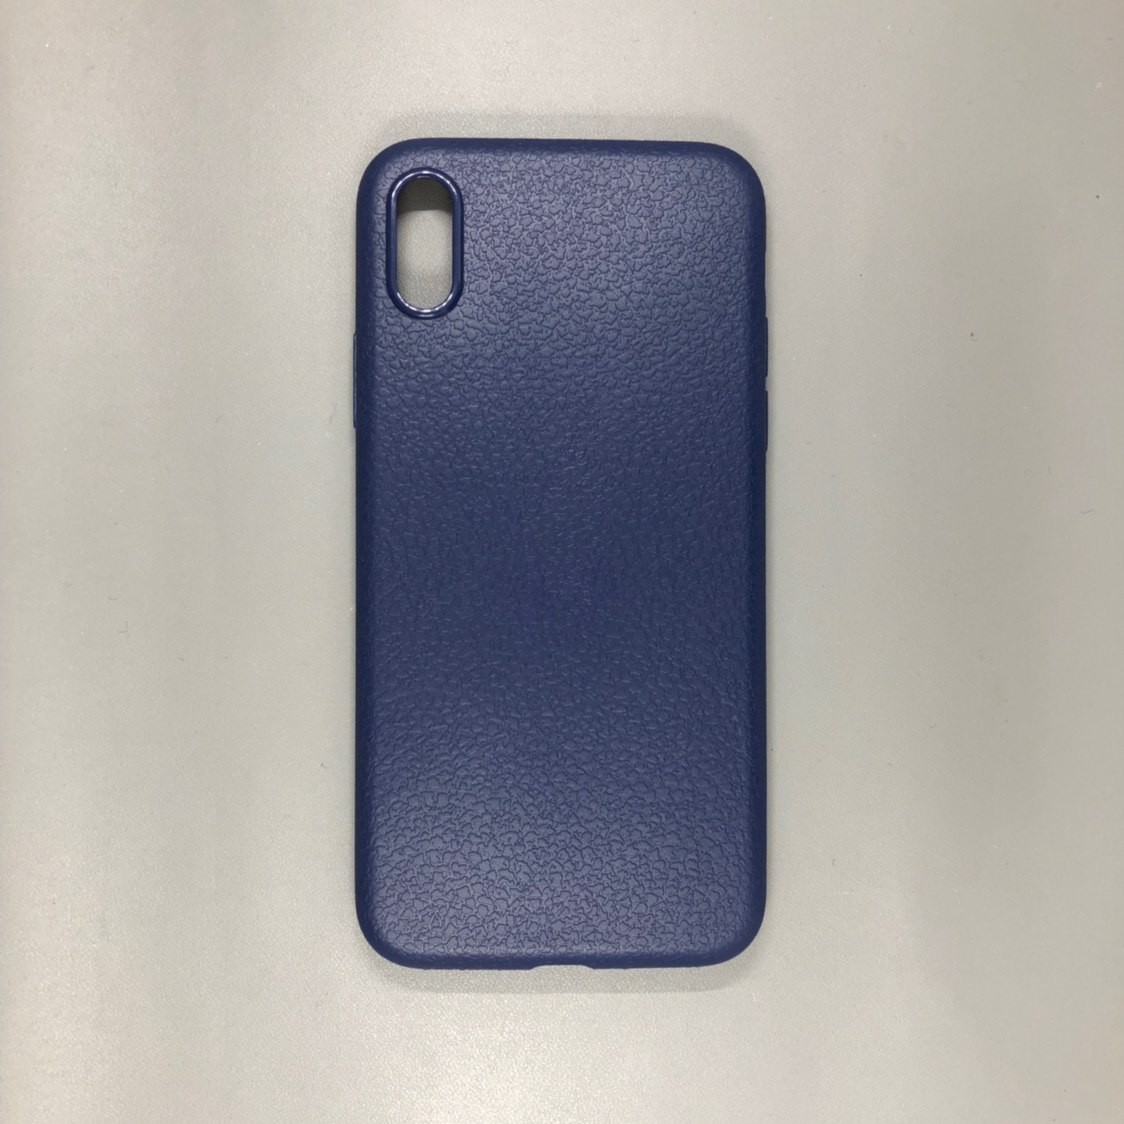 iPhone X Plastic Blue